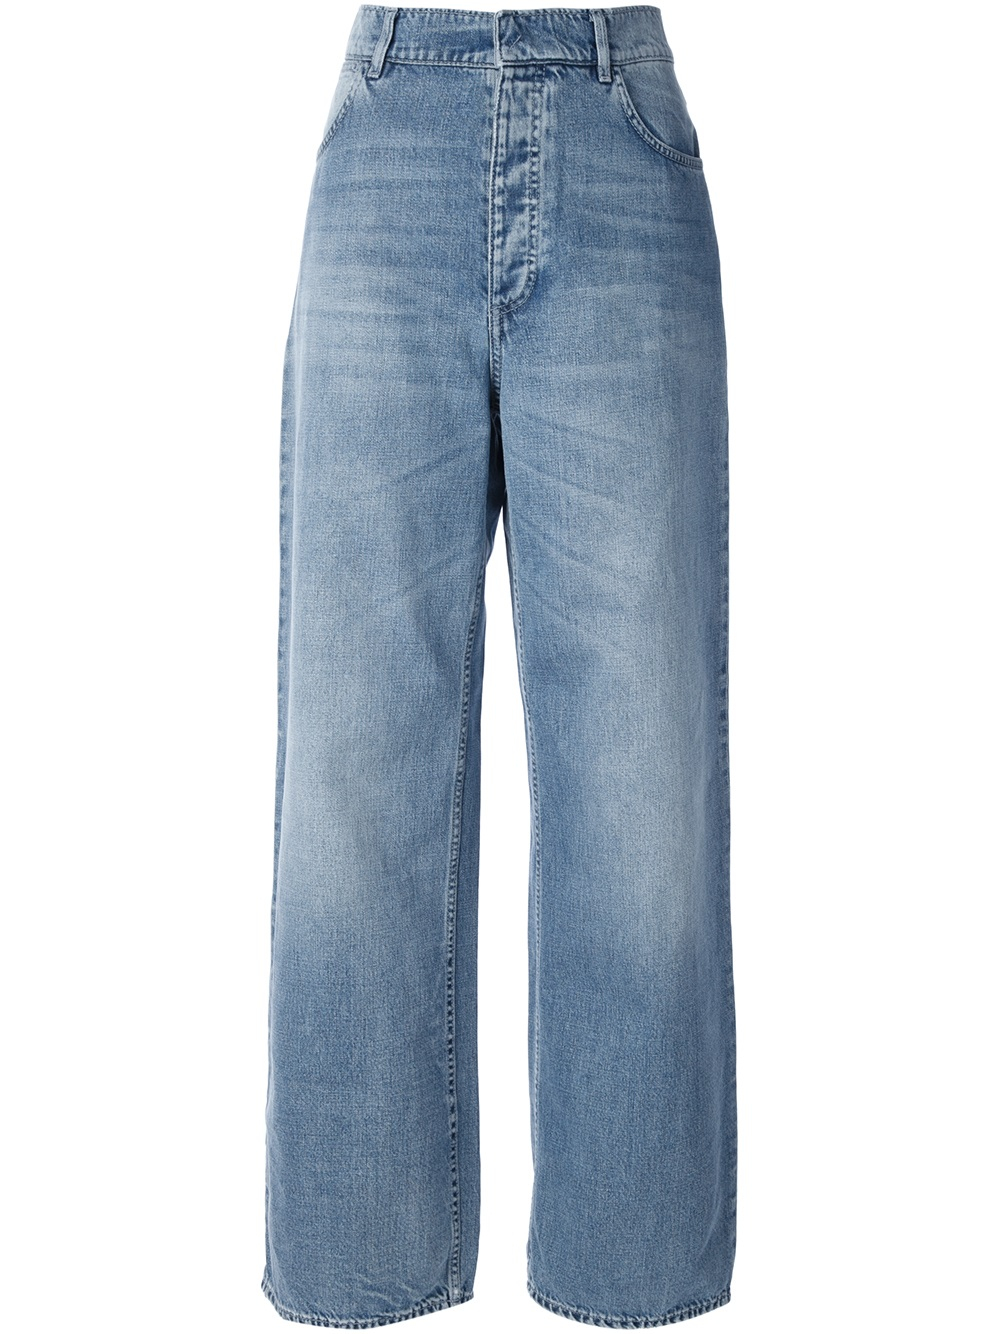 Lyst - Acne Studios Drift Vintage Jean in Blue